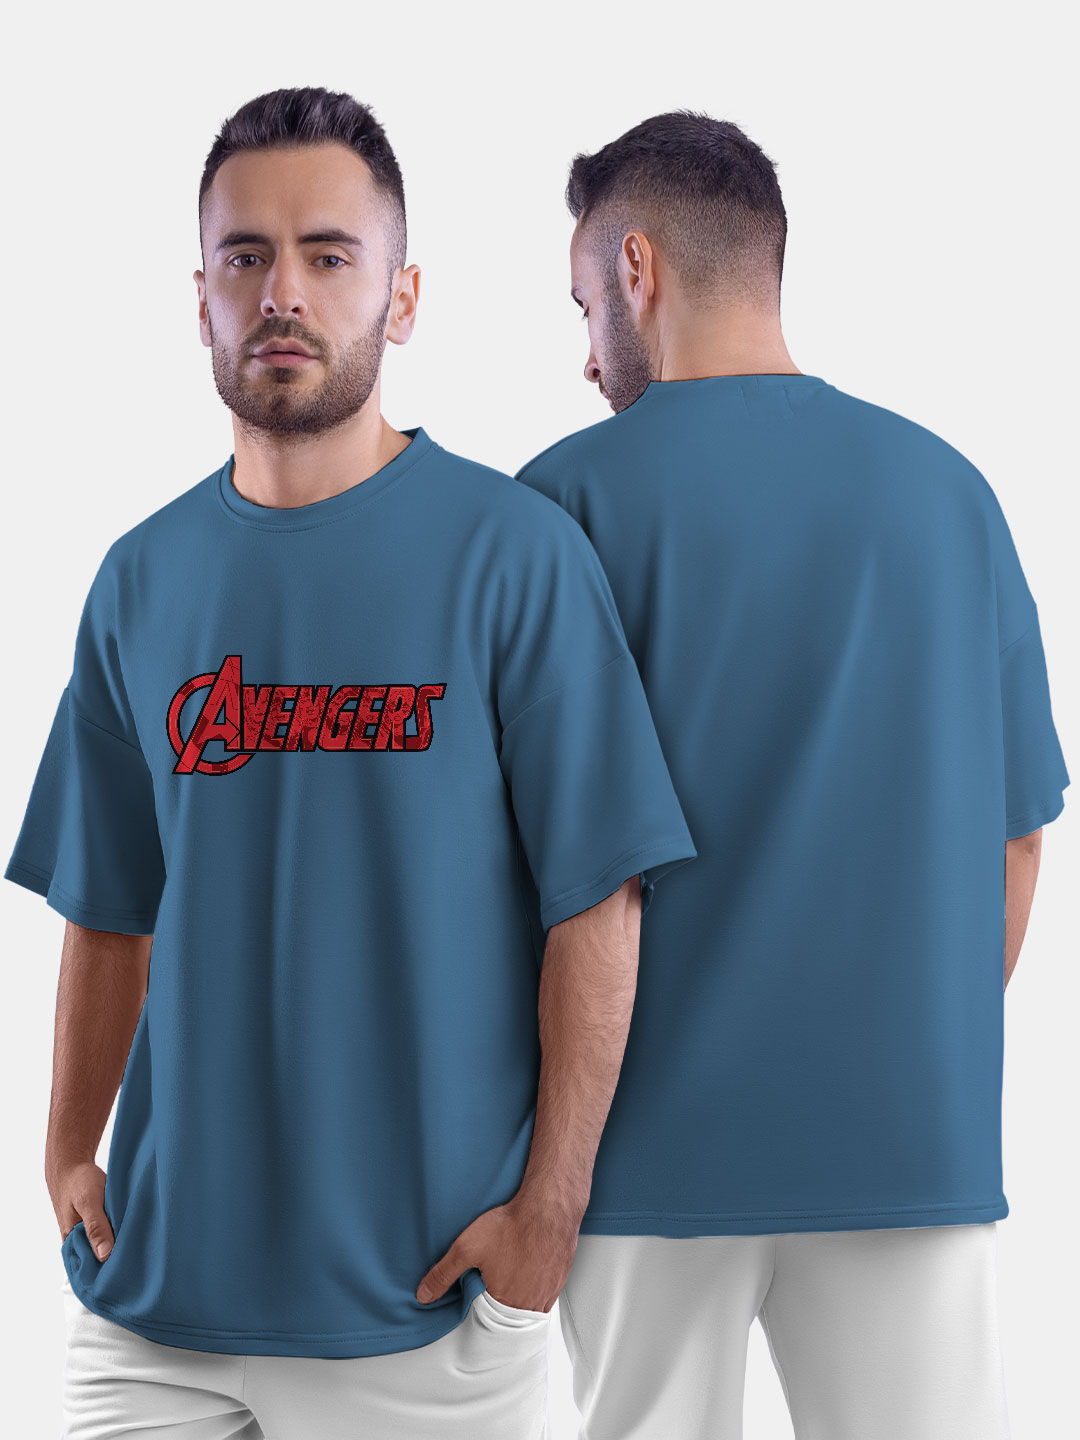 Buy Avenger Reveal - Male Oversized T-Shirt T-Shirts Online